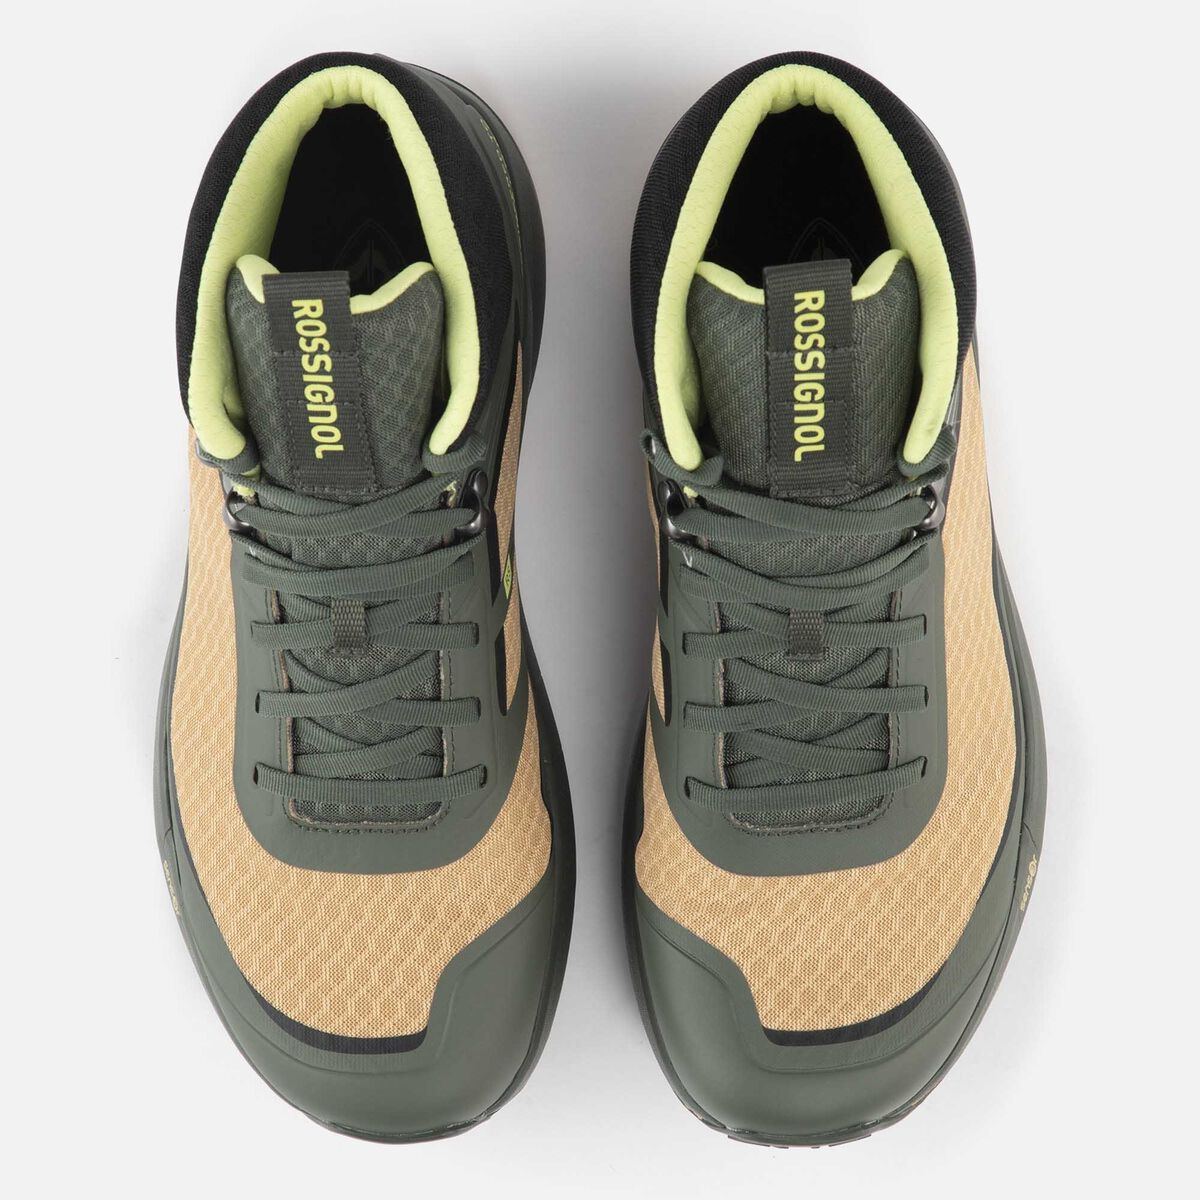 Men's green lightweight hiking shoes